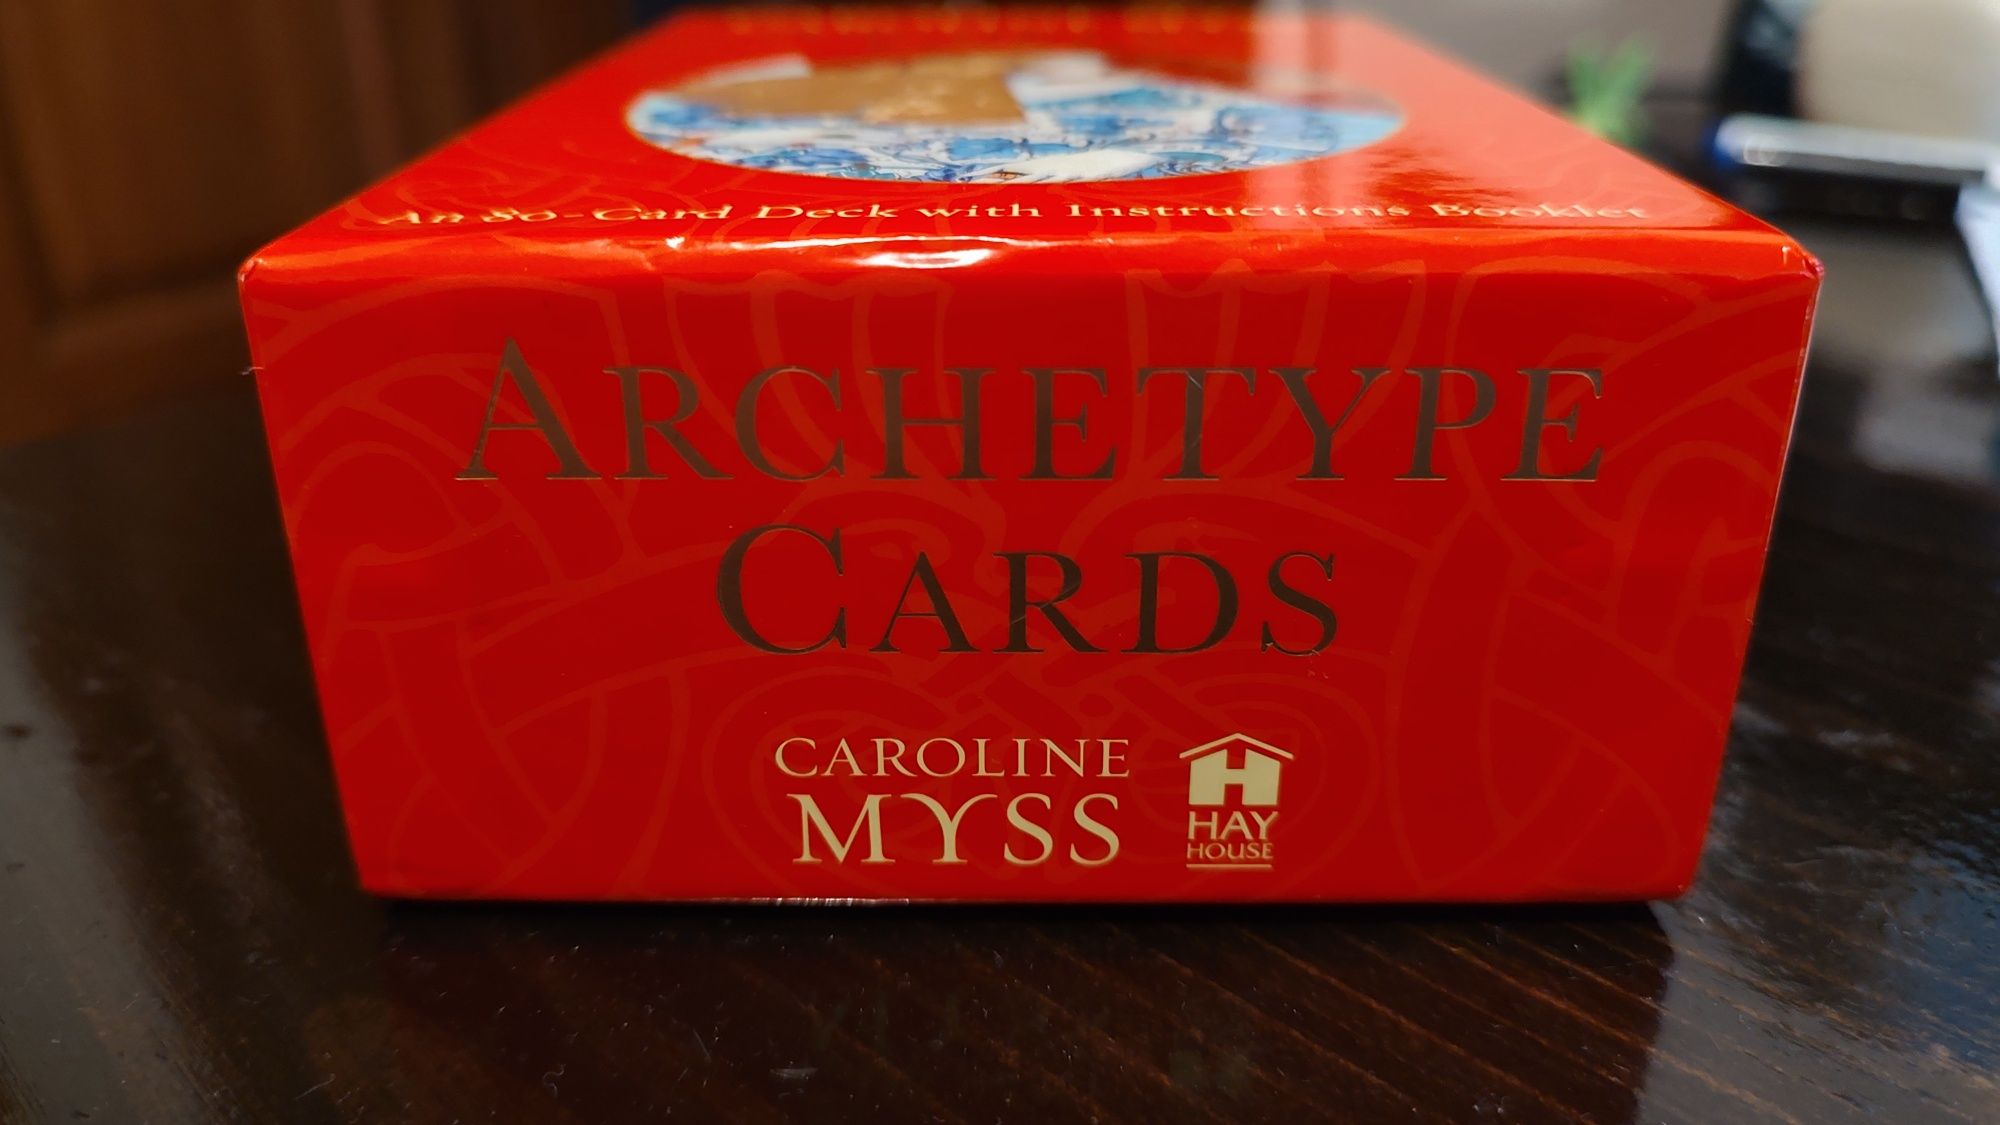 Cărți Caroline Myss Archetype Cards